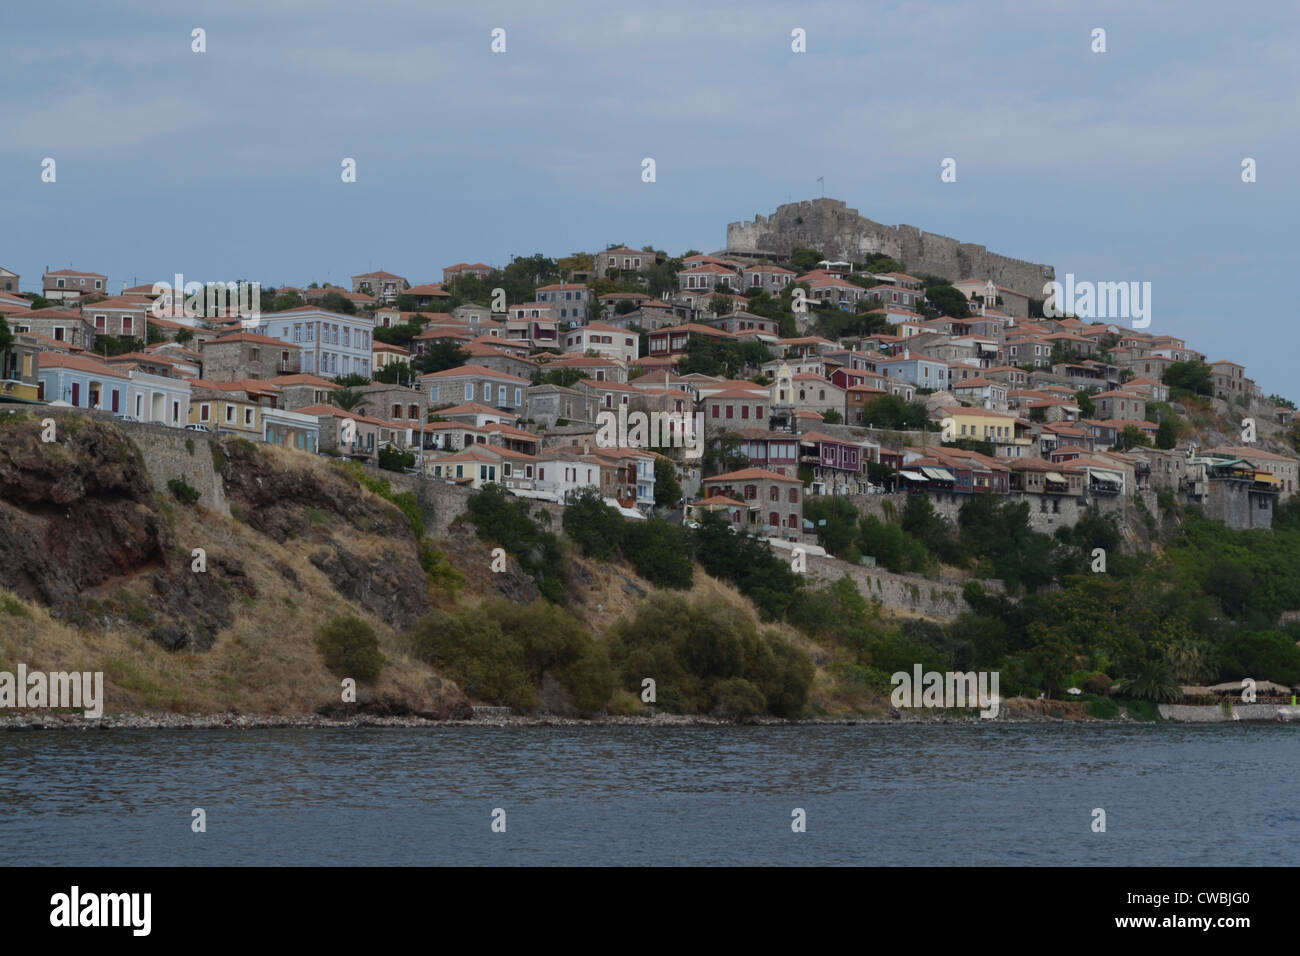 Eine Ansicht von Molyvos (auch genannt Mithymna), ein Dorf auf der griechischen Insel Lesbos. Stockfoto